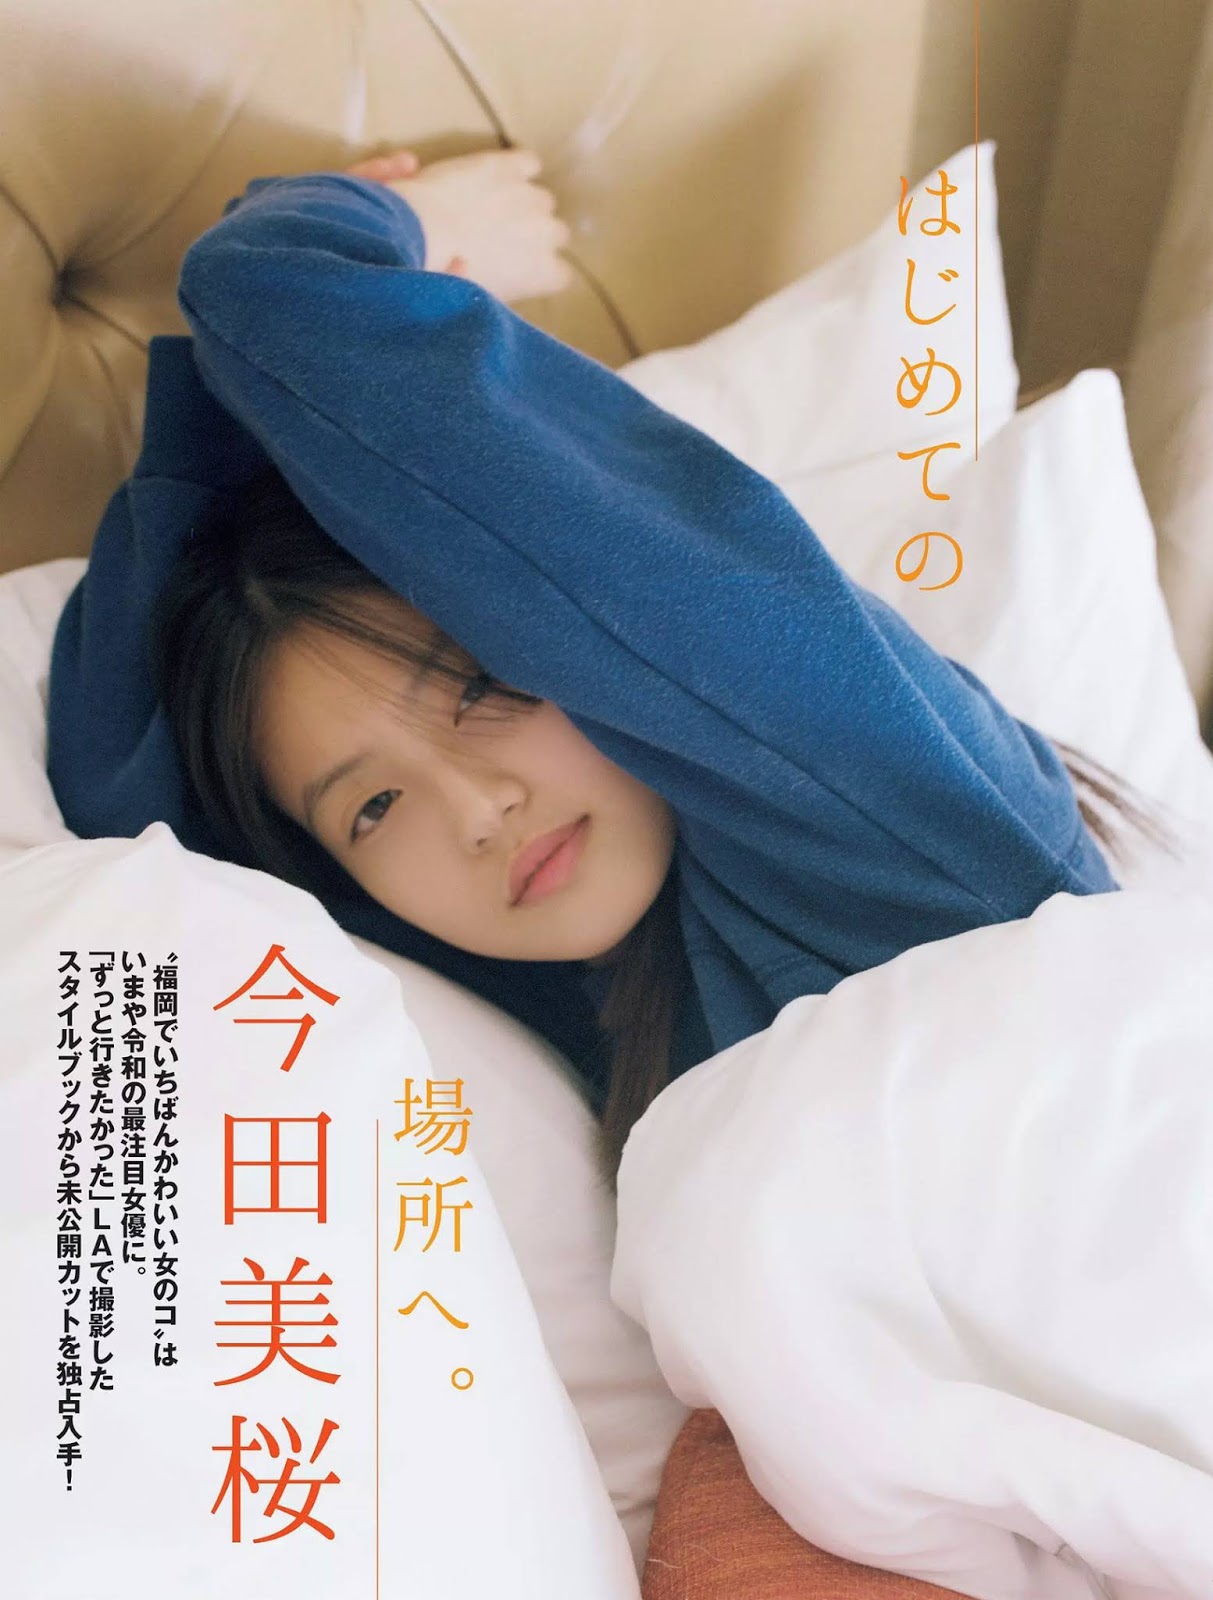 Mio Imada 今田美桜, FLASH 2019.07.23-30 (フラッシュ 2019年7月23-30日号)